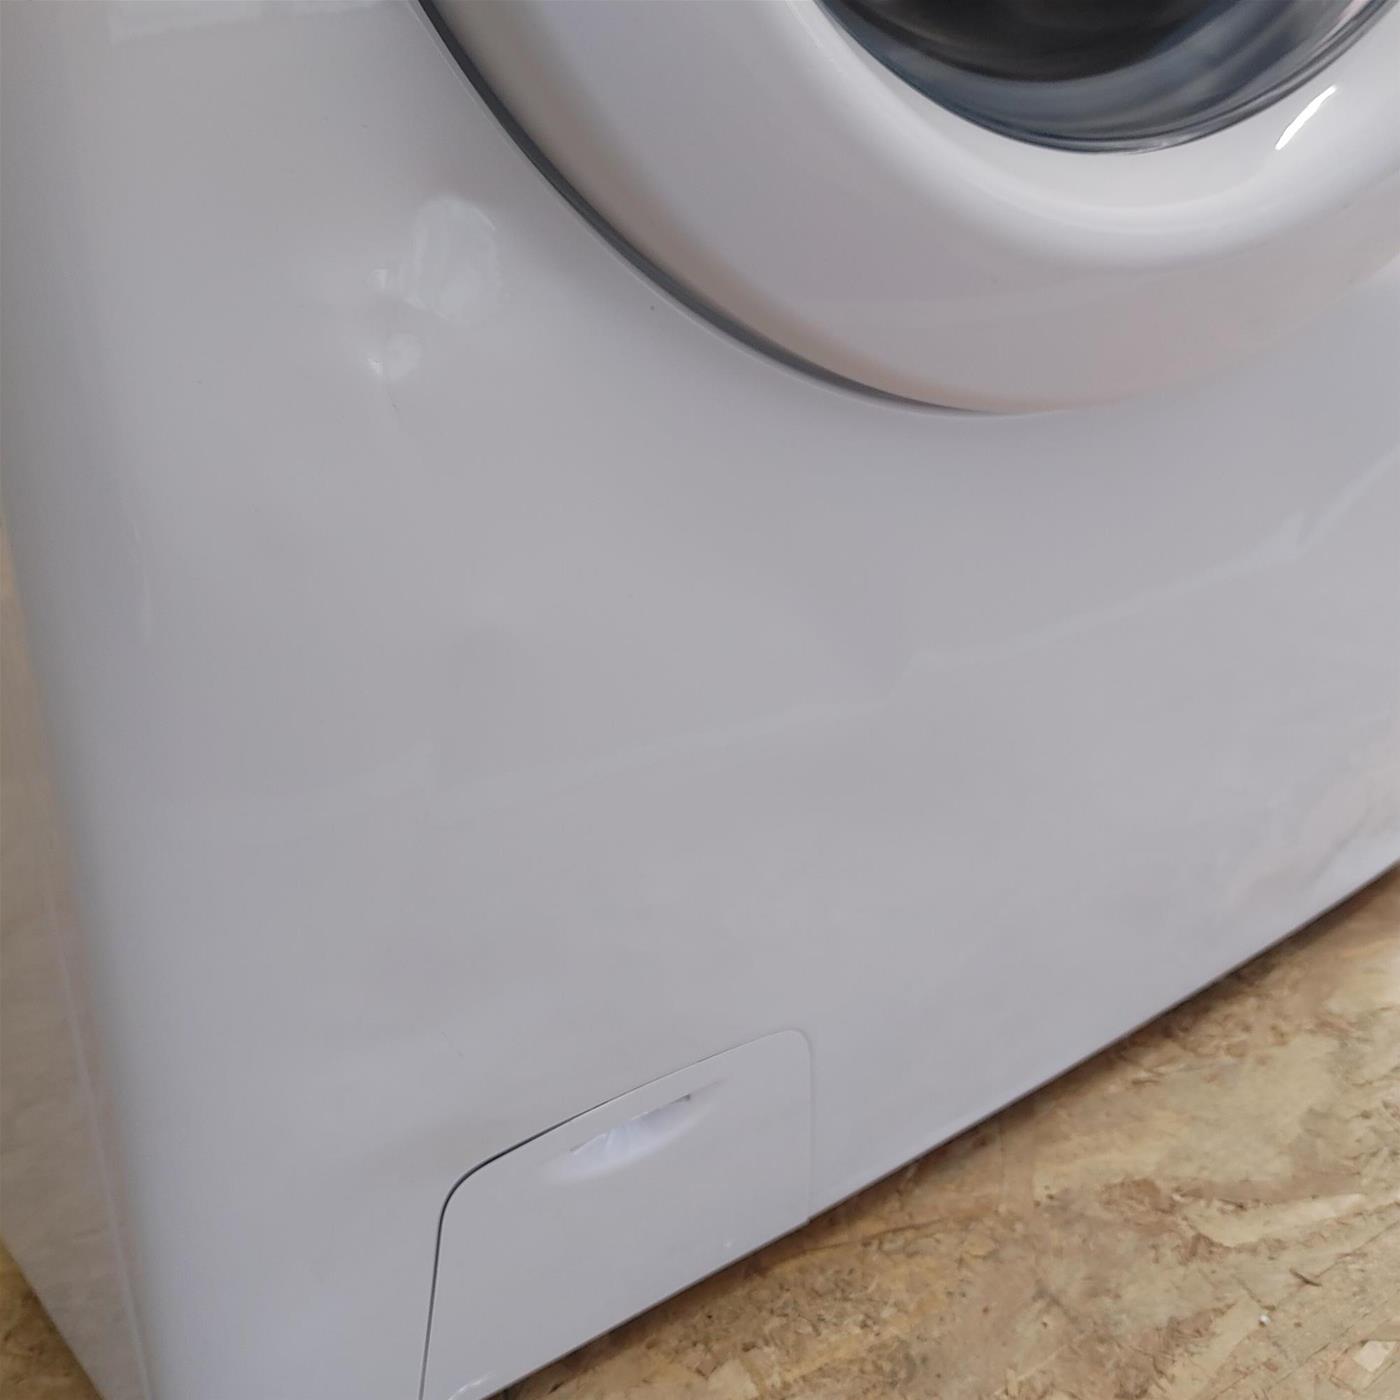 Candy Smart CS4 1061DE/1-S lavatrice Caricamento frontale 6 kg 1000 Giri/min D Bianco